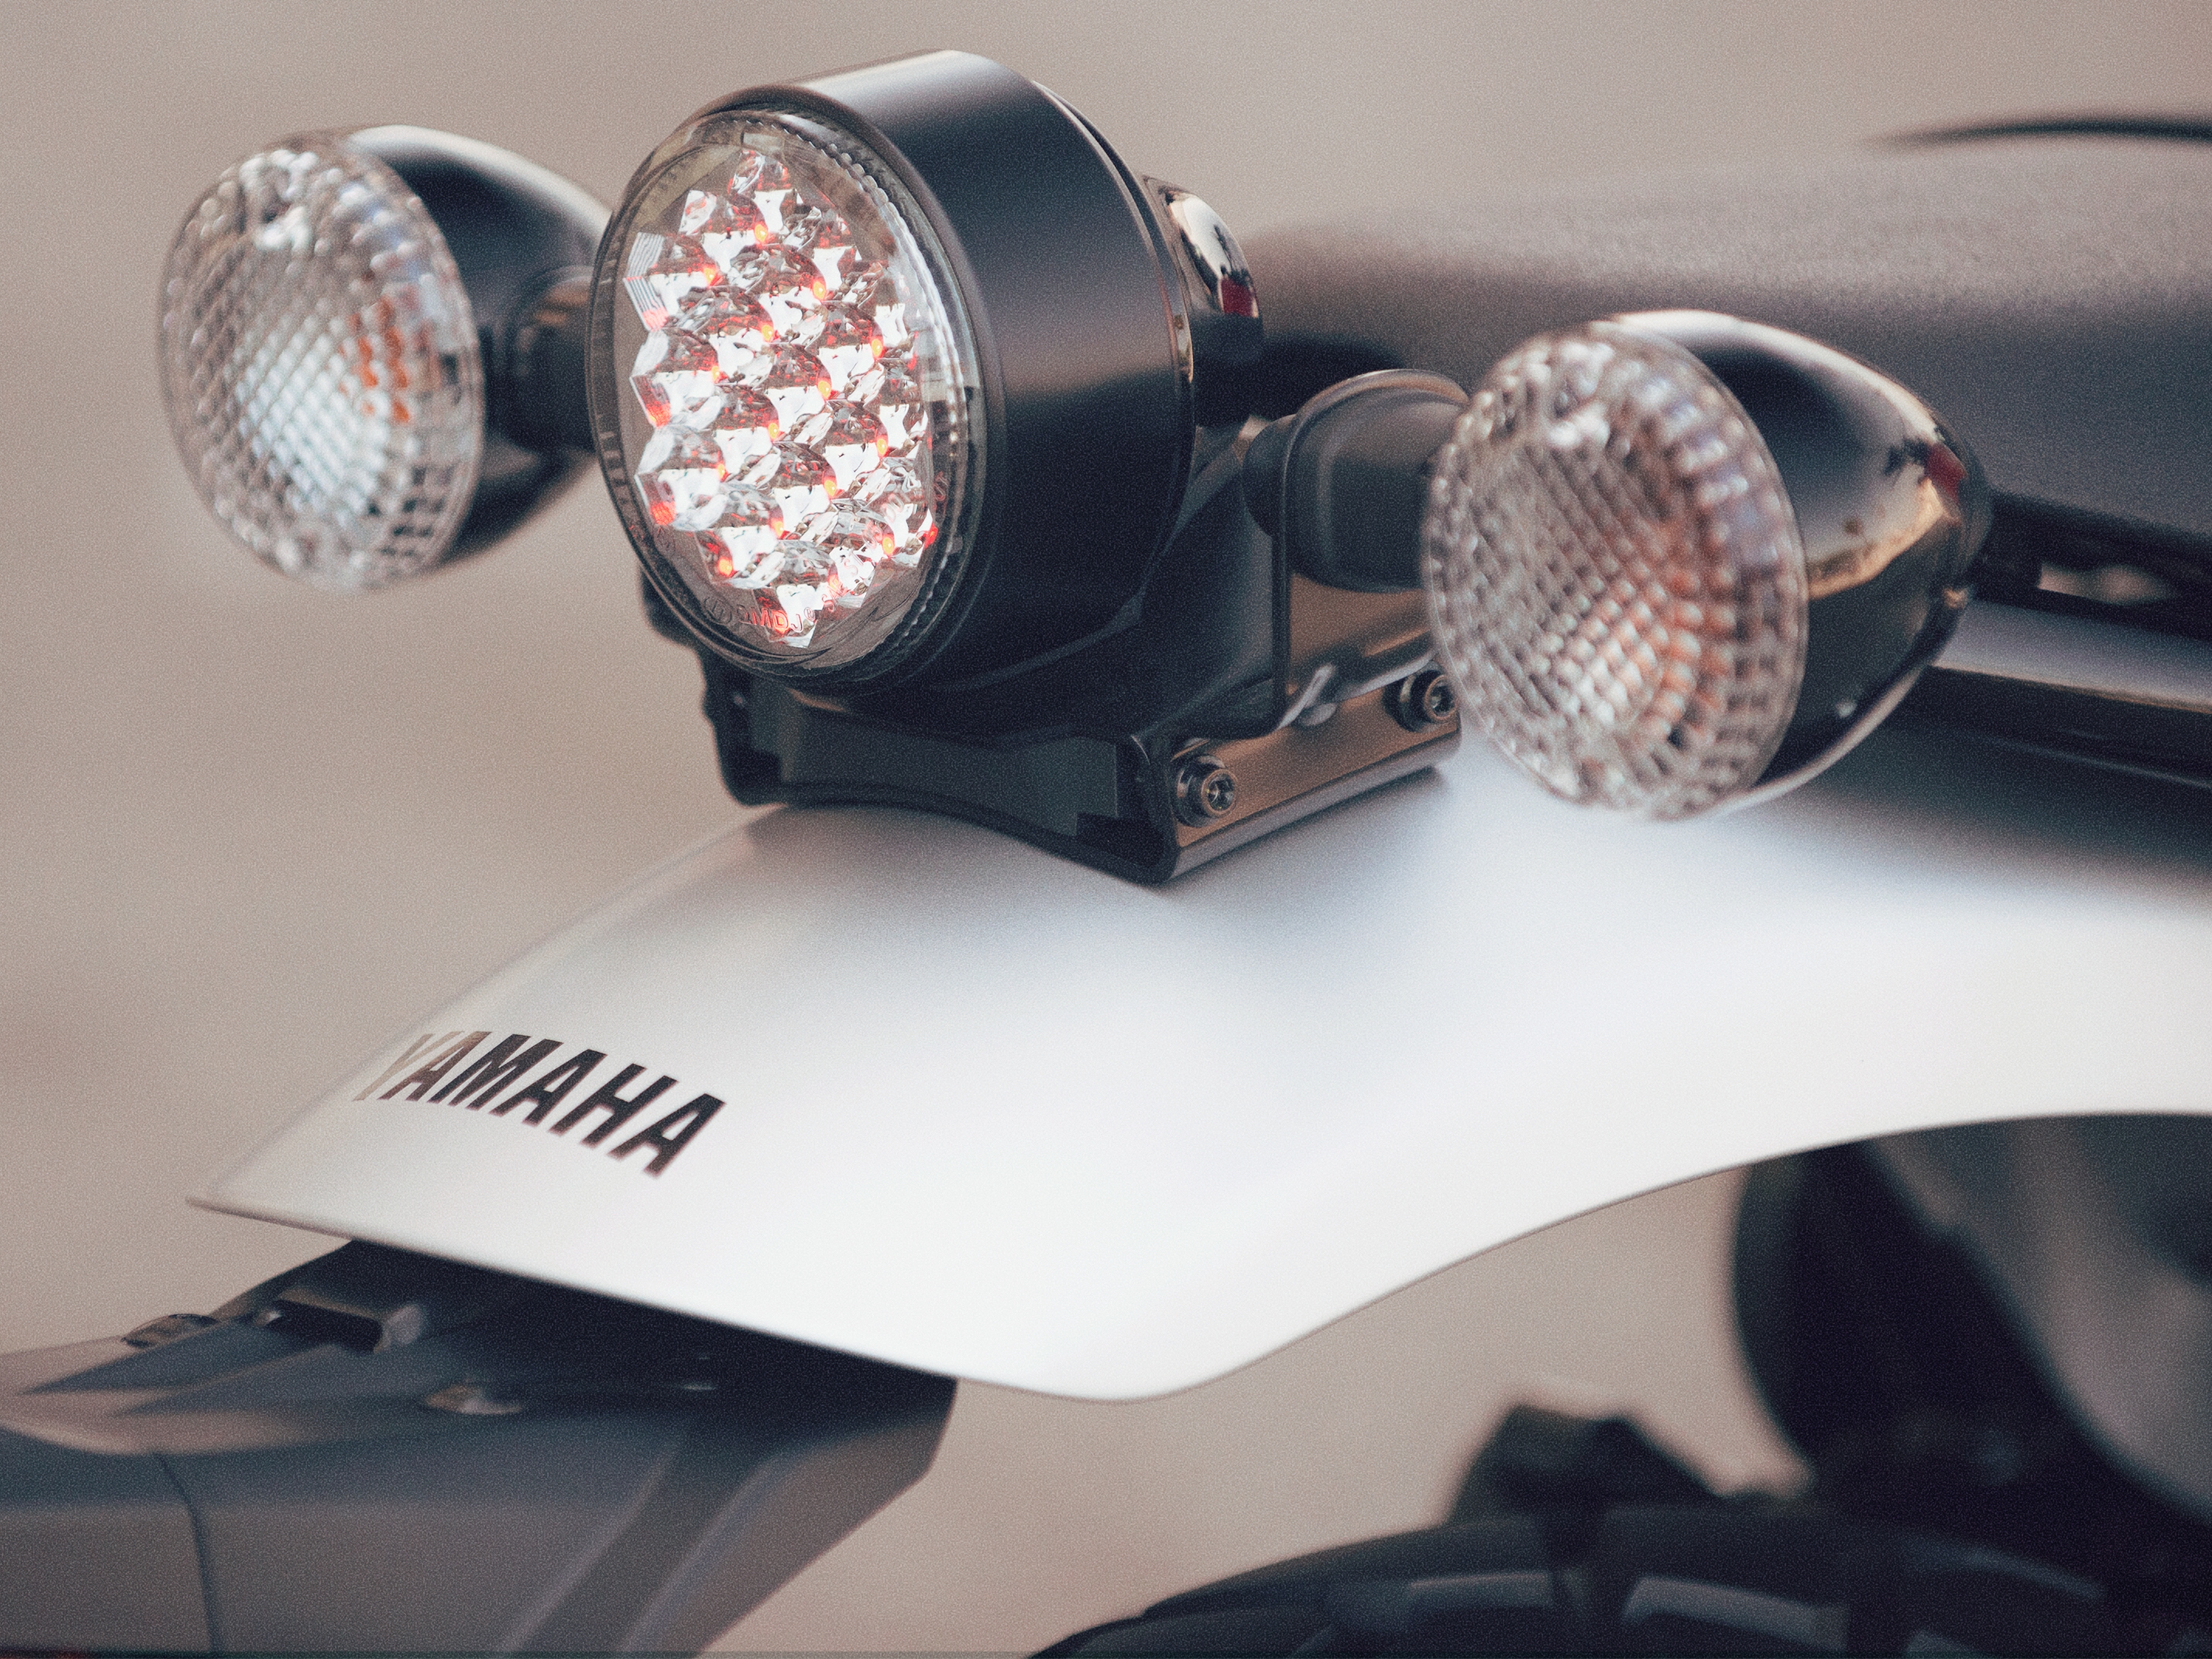 Yamaha reveals new SCR950 ‘street scrambler’